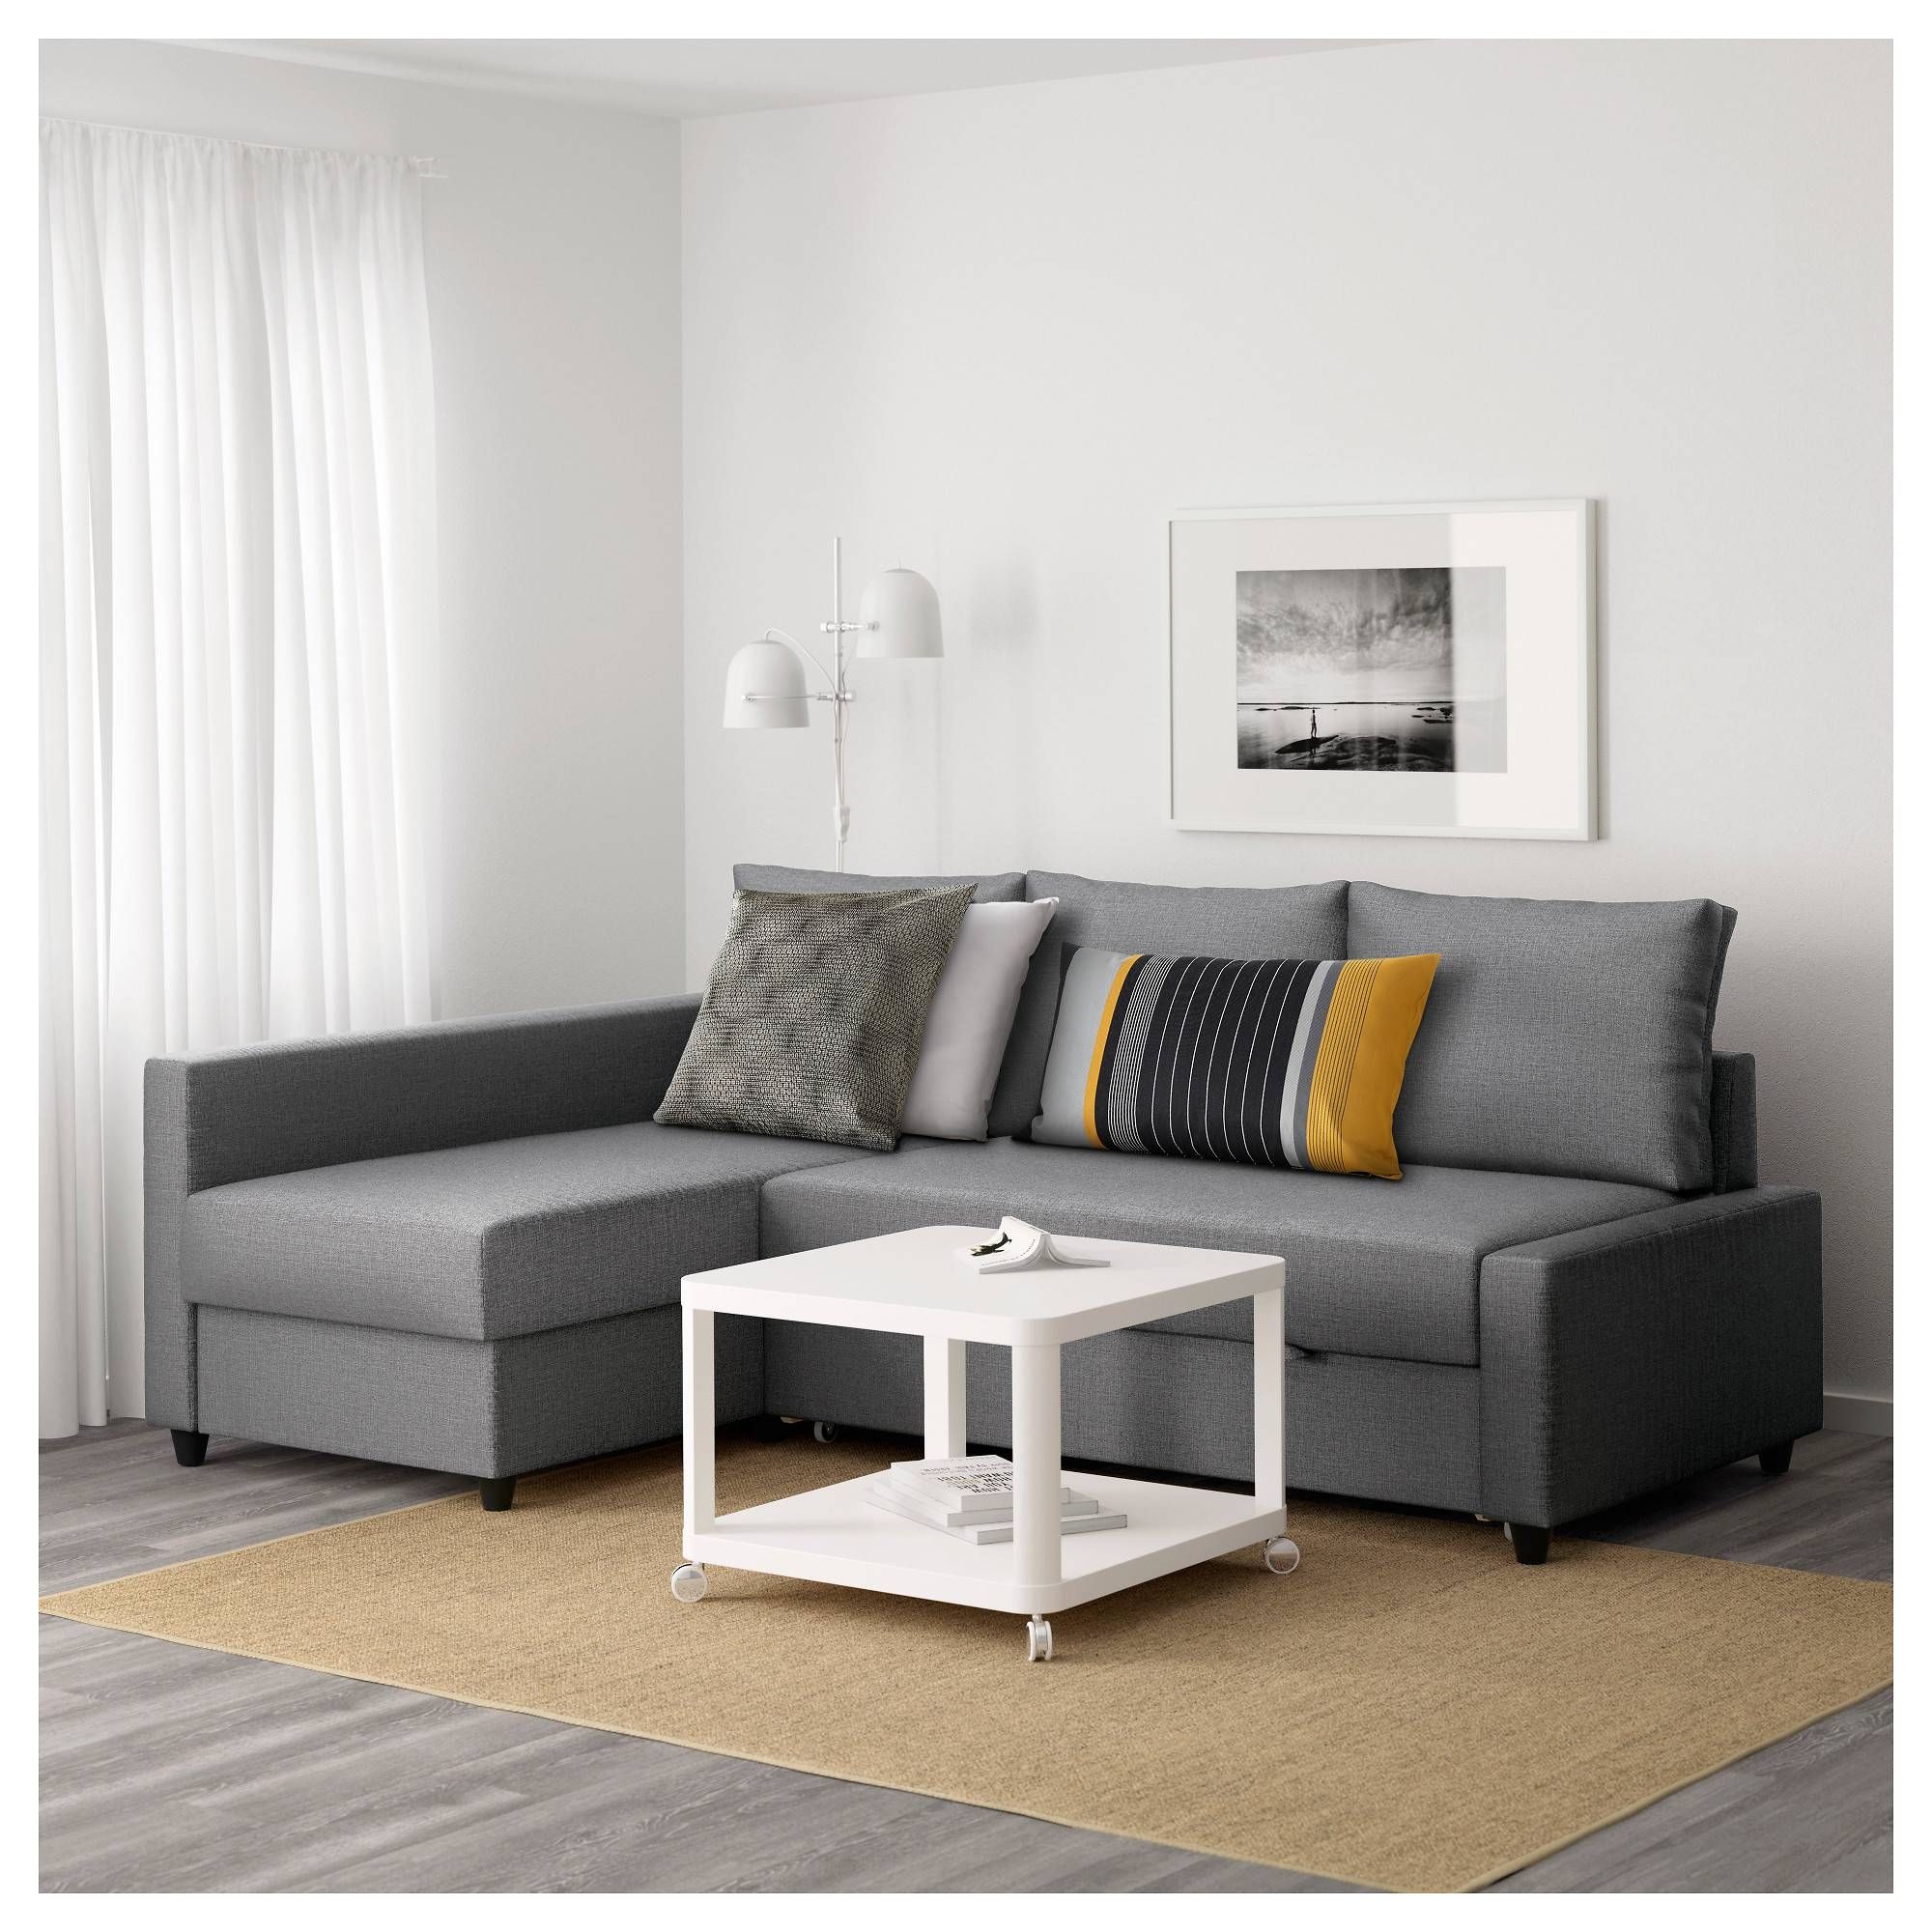 Friheten Corner Sofa Bed With Storage Skiftebo Dark Grey – Ikea Within Corner Sofa Bed With Storage Ikea (View 7 of 30)